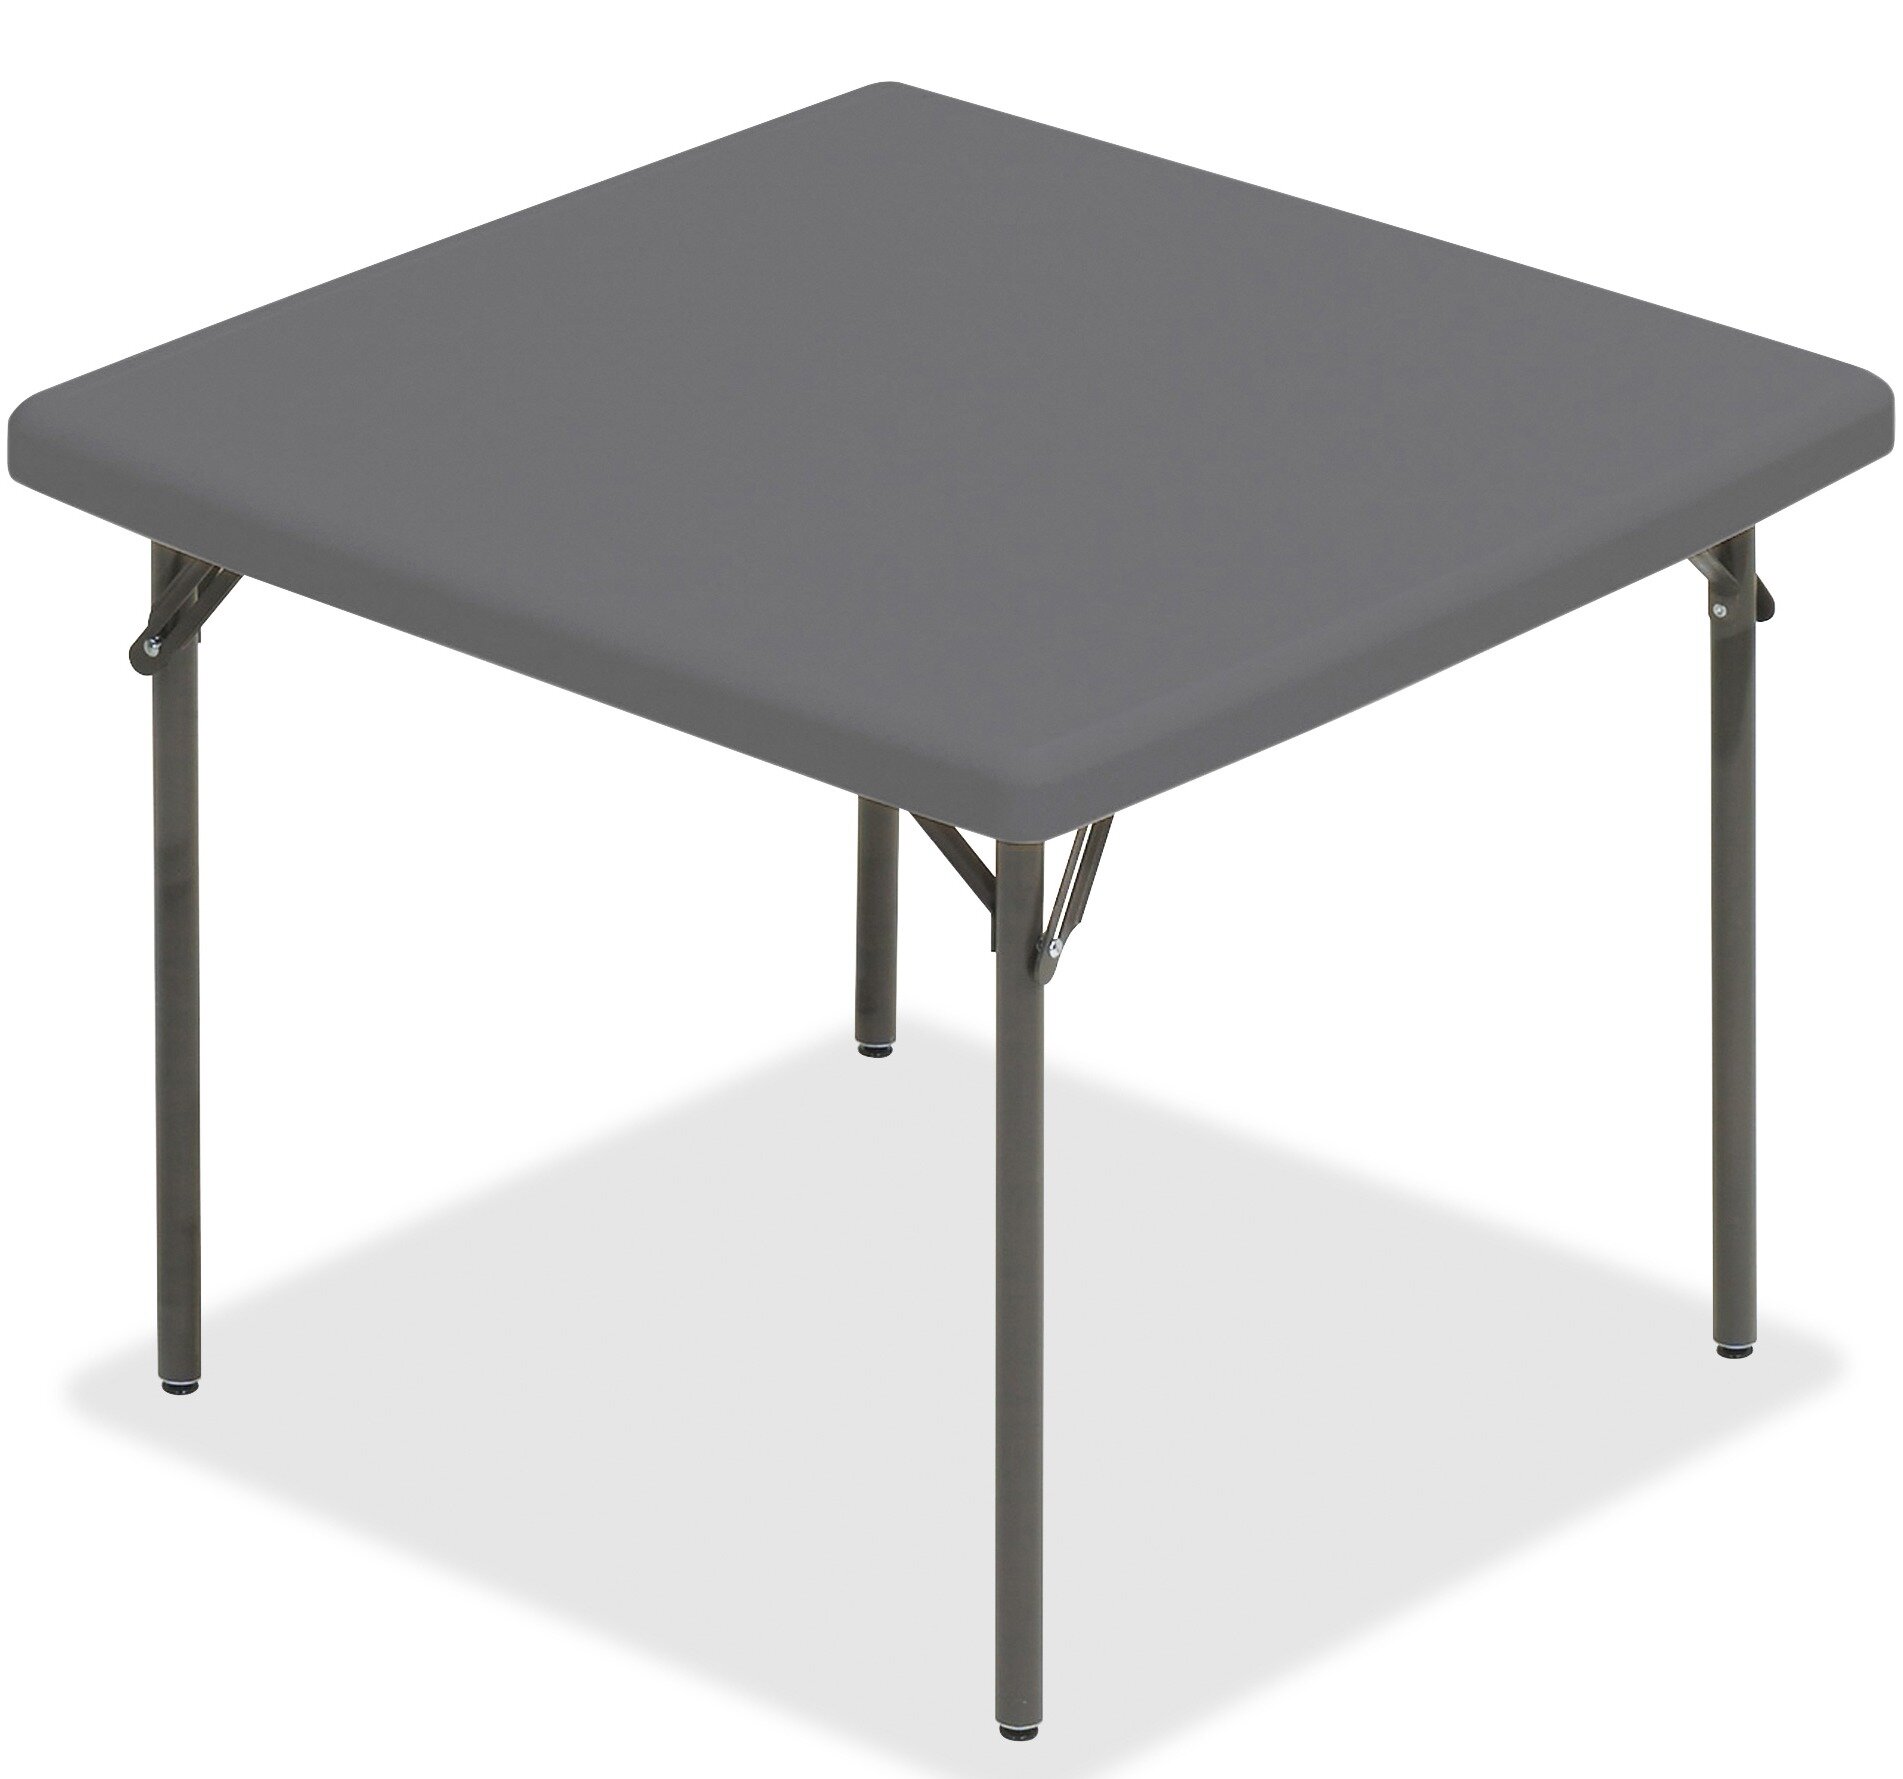 square folding table australia